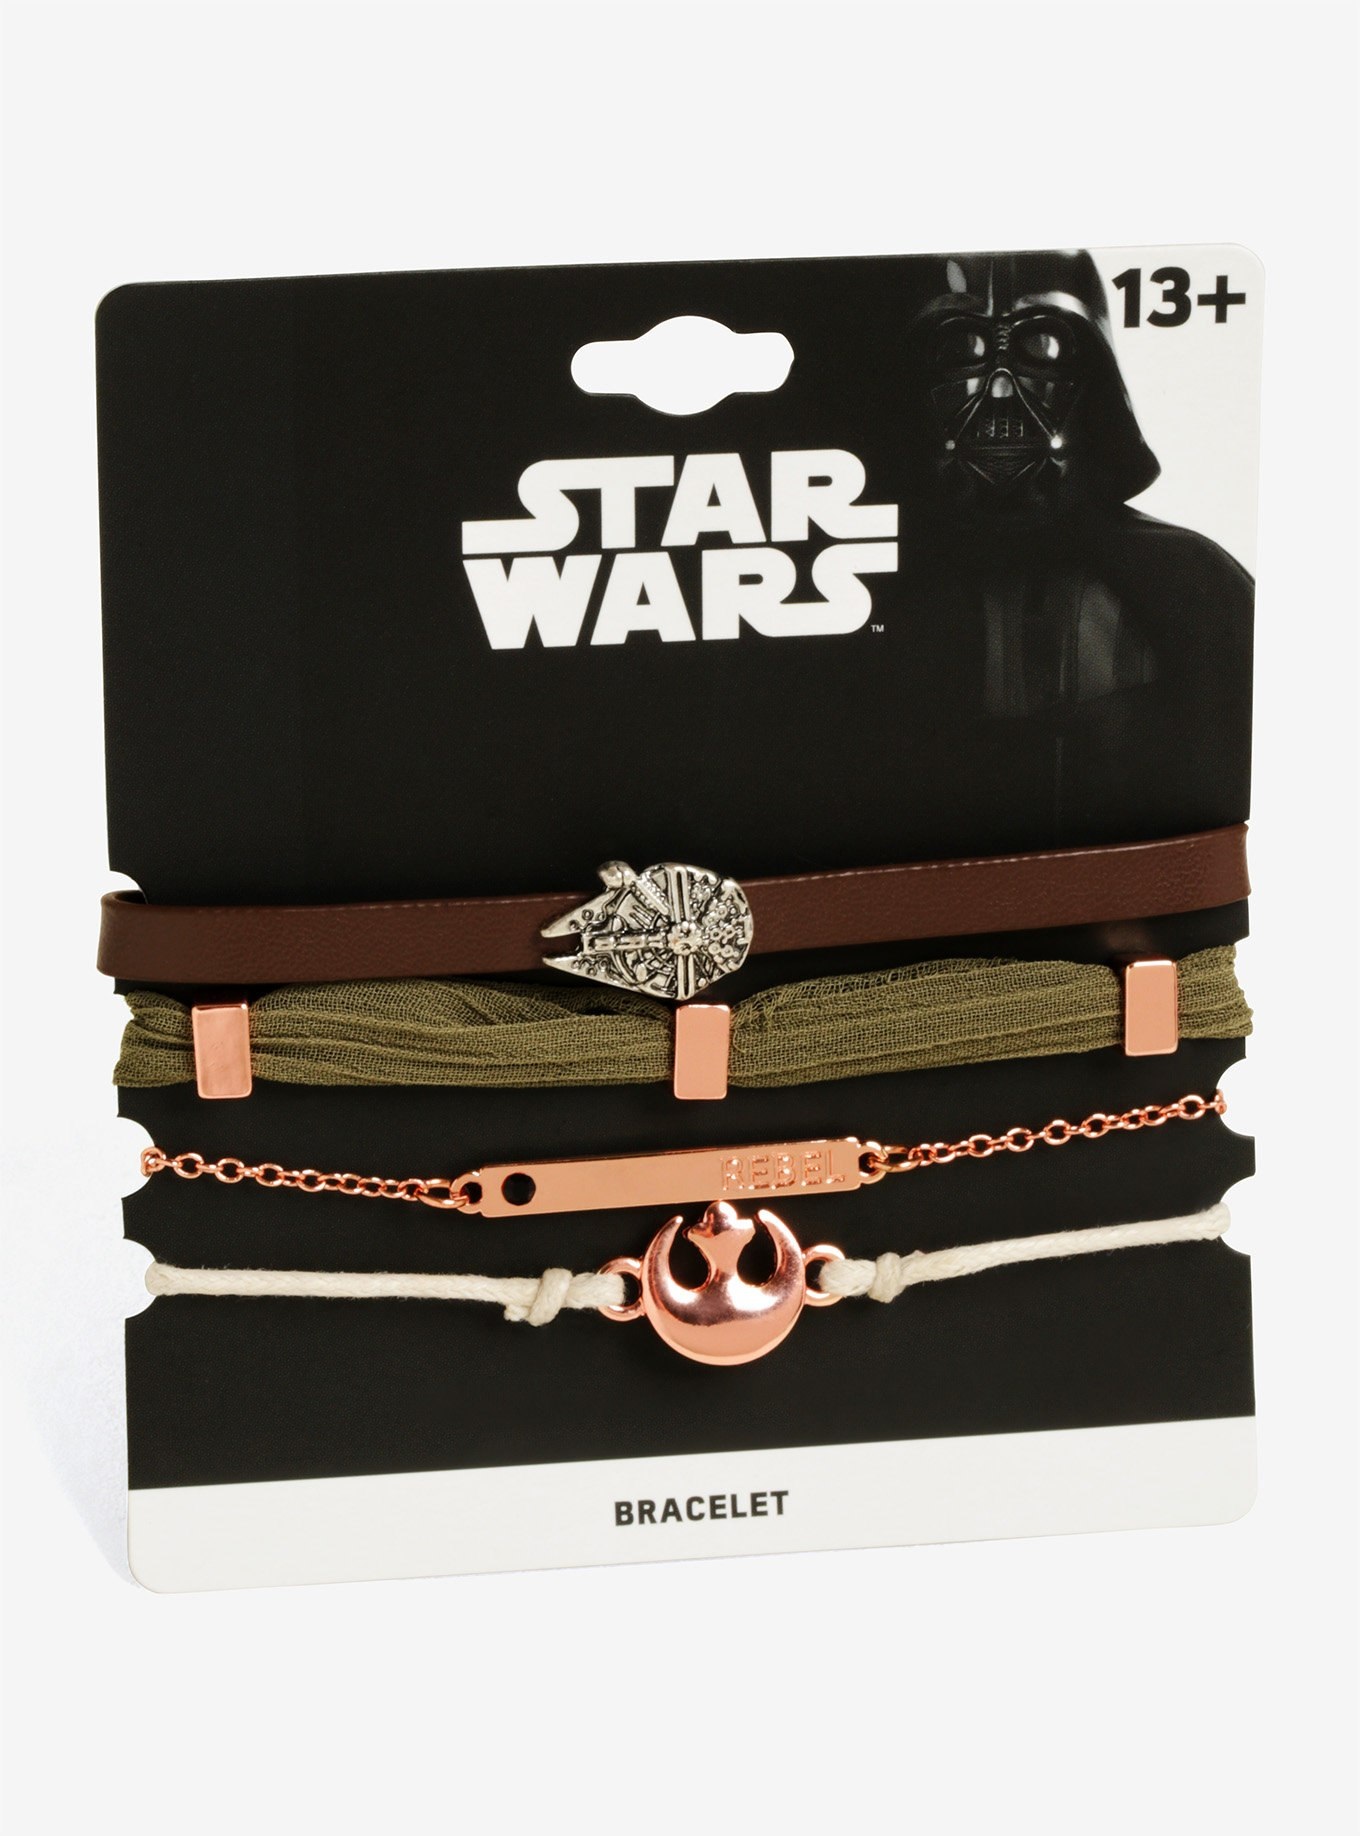 Star Wars Rebel Bracelet Set at Box Lunch